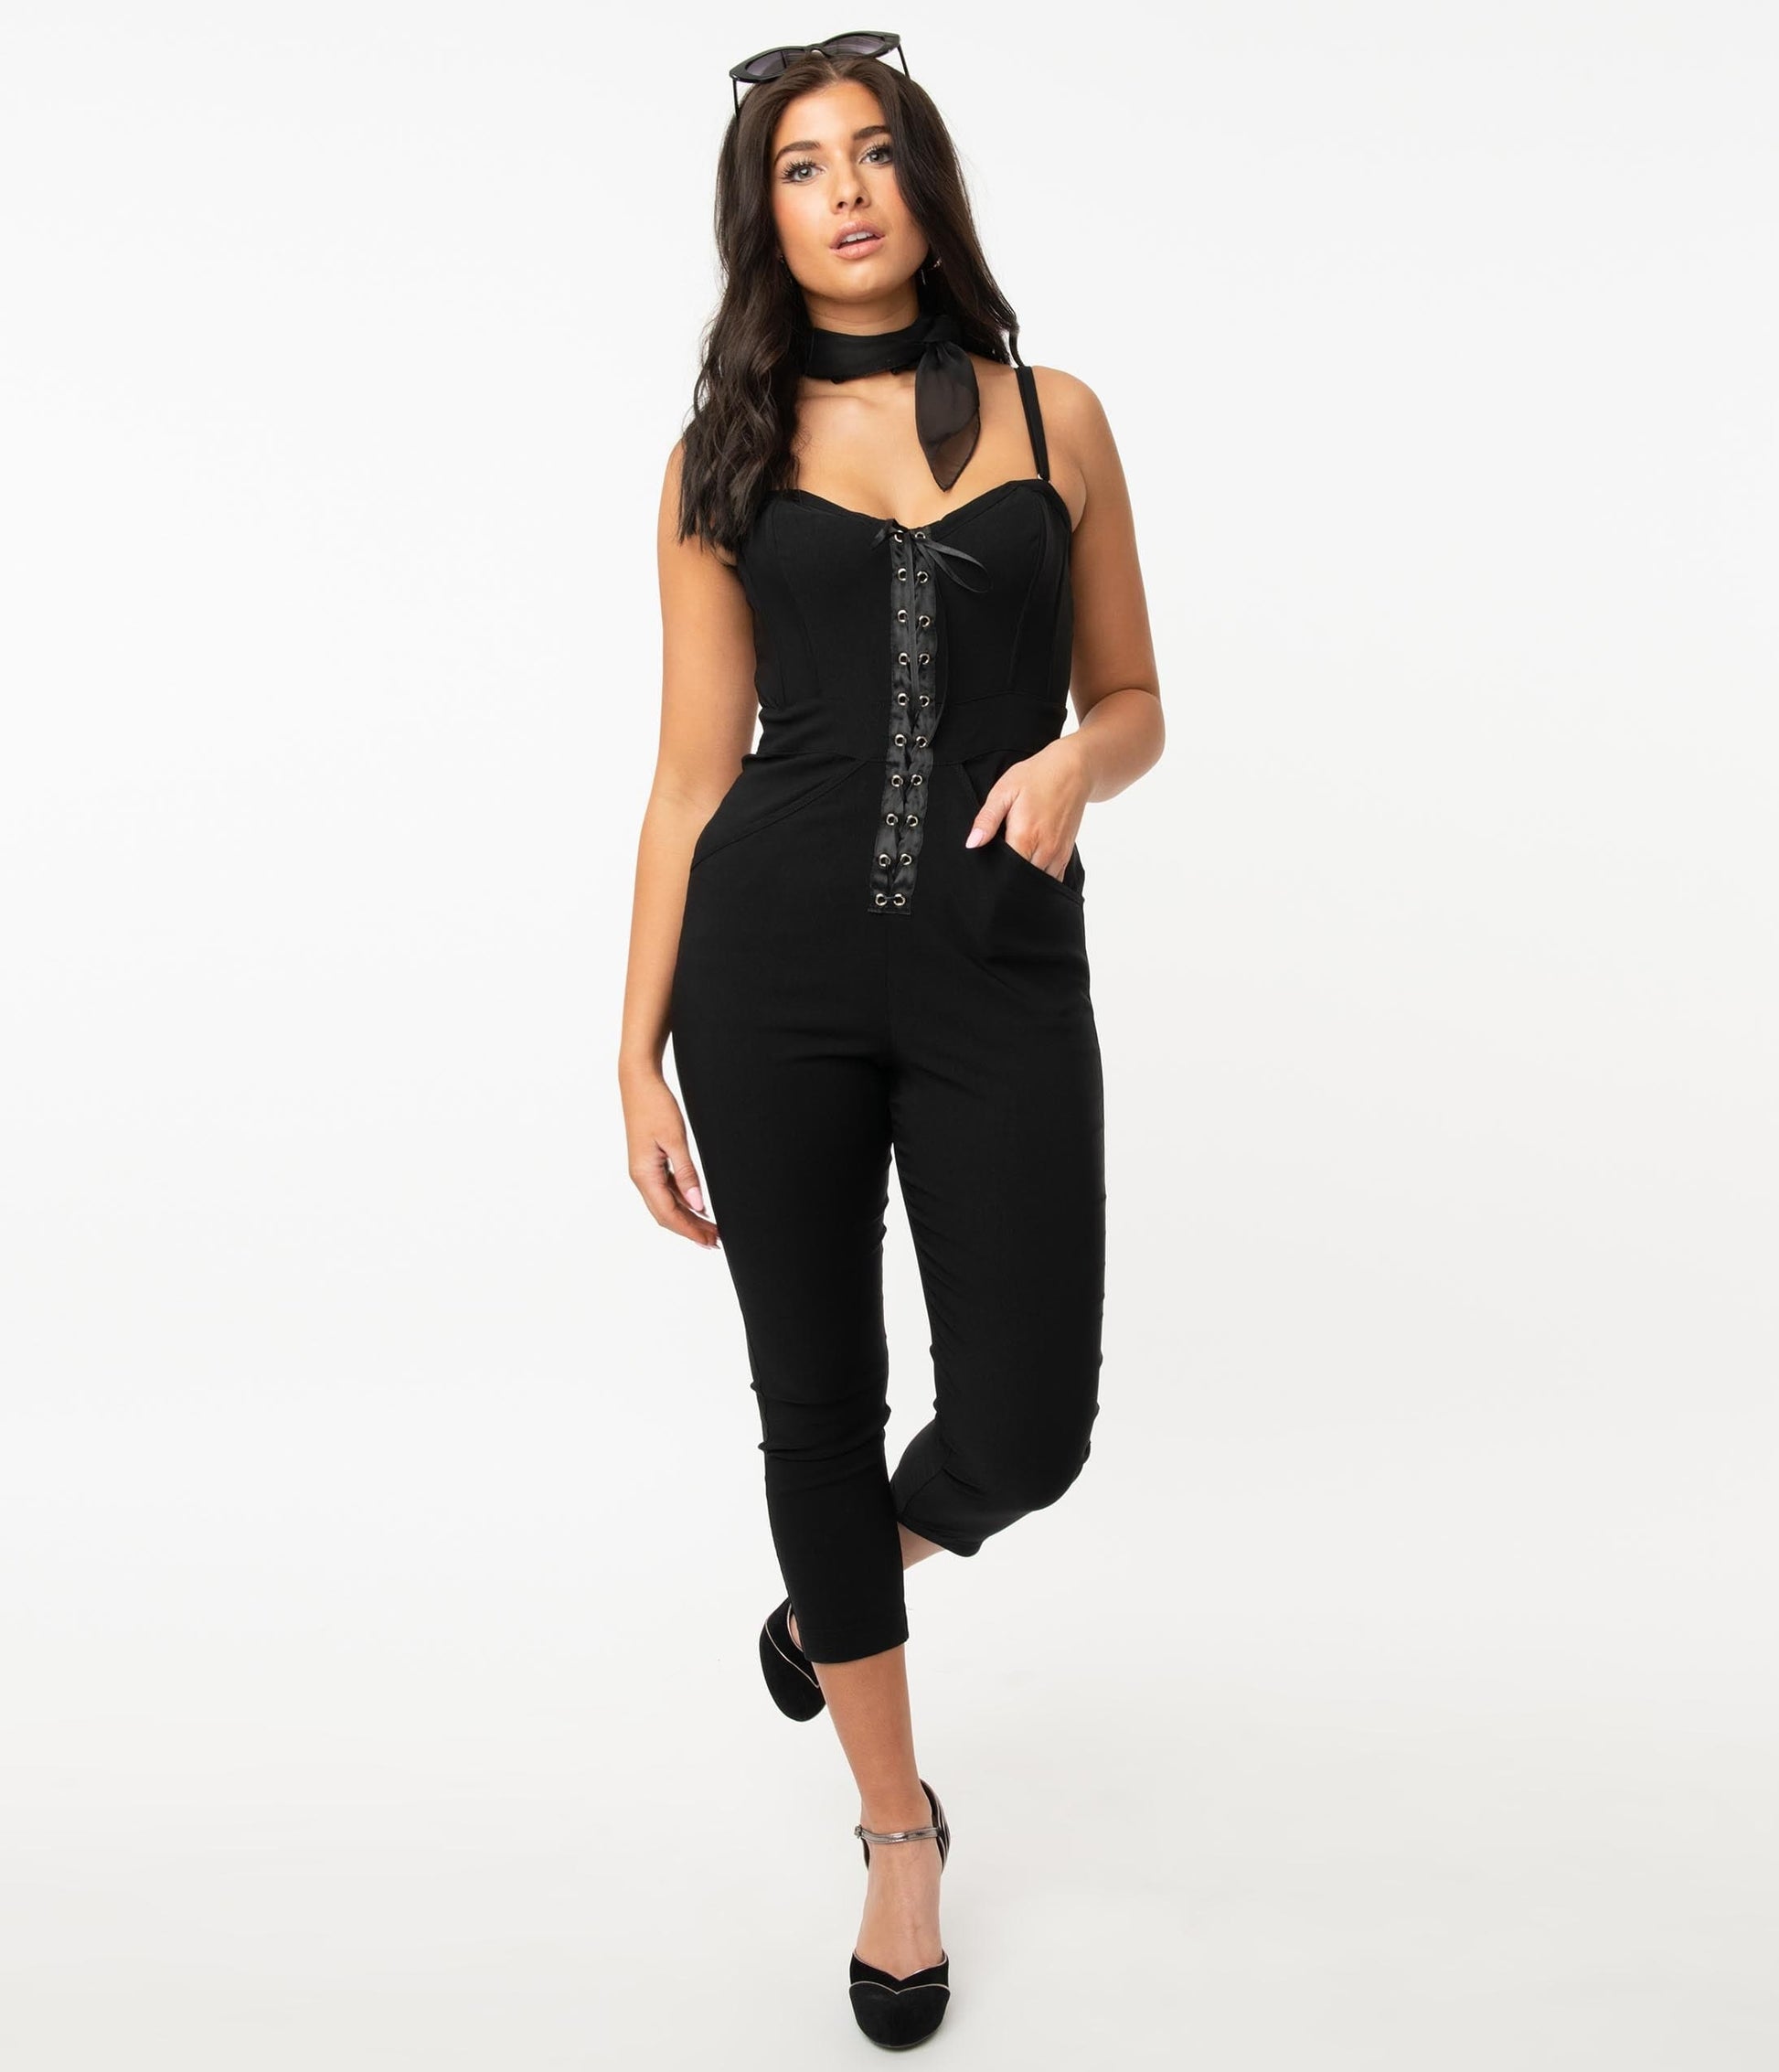 https://www.unique-vintage.com/cdn/shop/products/unique-vintage-black-corset-delaney-jumpsuit-893454.jpg?v=1704955164&width=1946